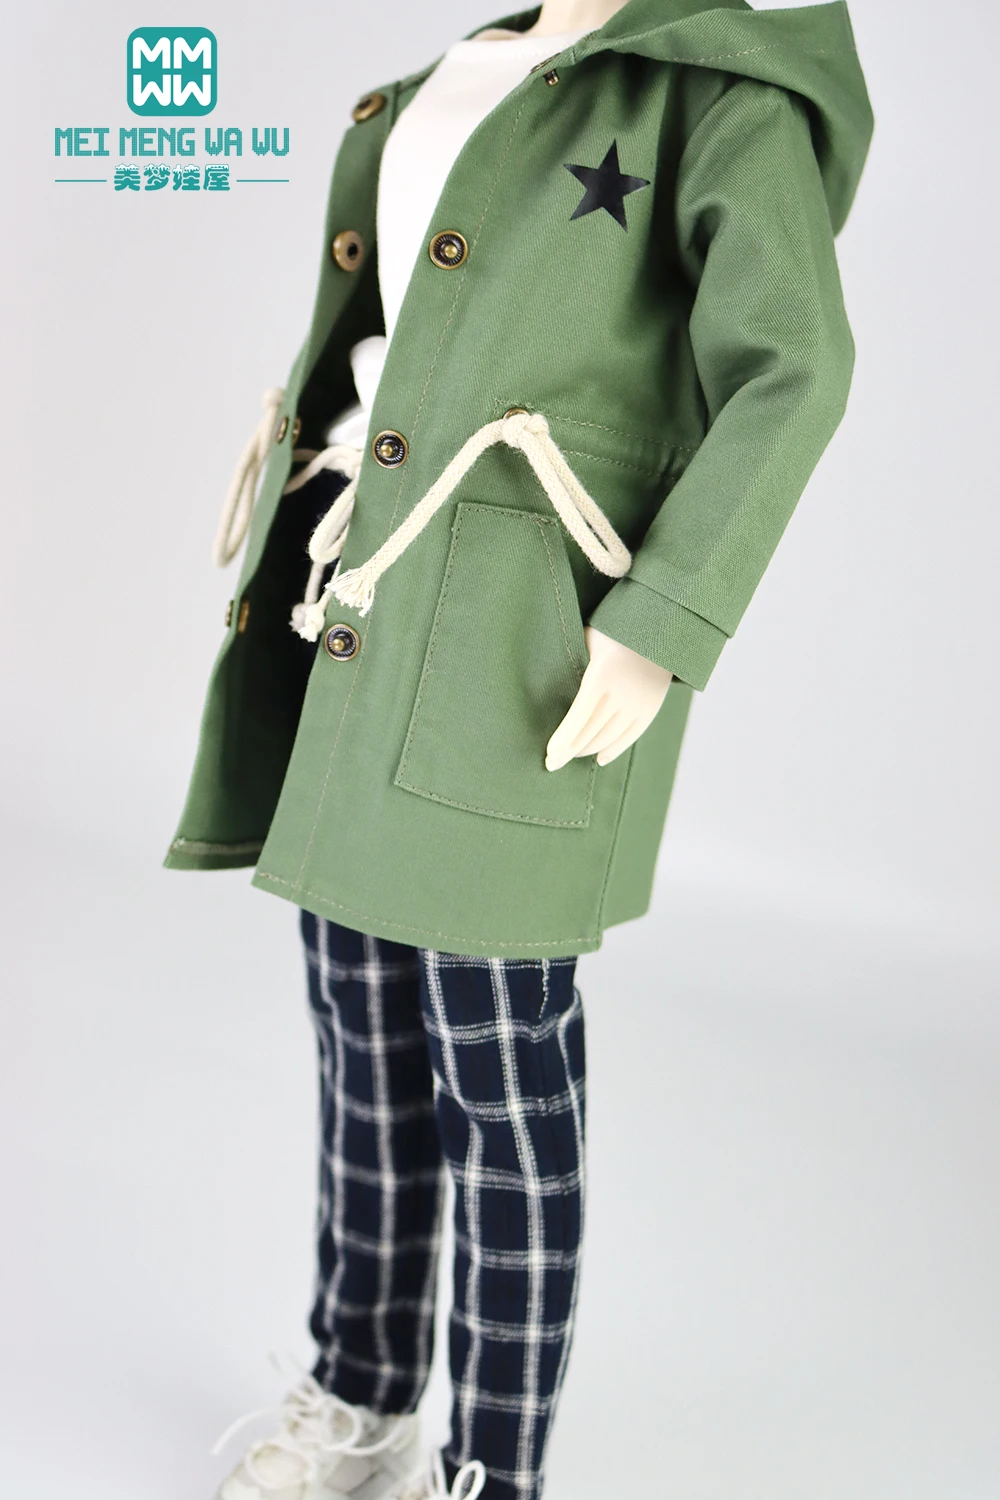 bjd bonecas acessórios de encaixes de bonecas msd mk yosd calças xadrez jaqueta com presente para meninas